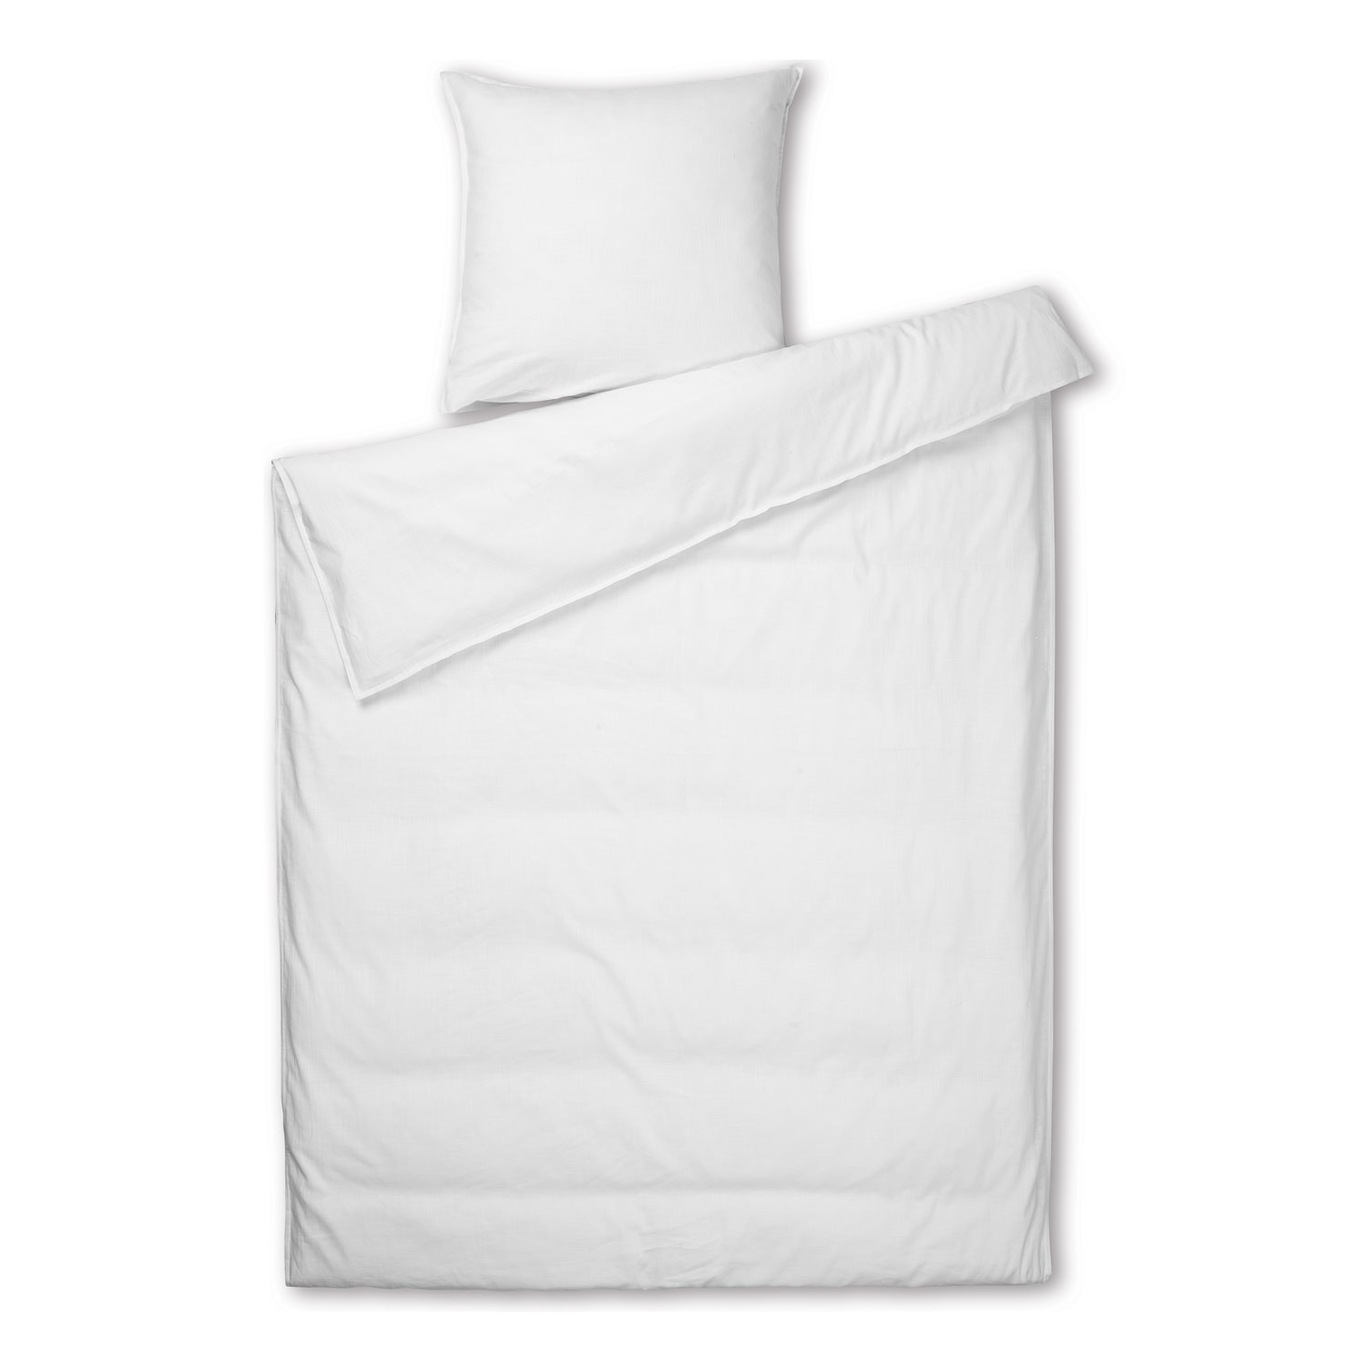 Monochrome Bettbezug Weiß, 140x210 + 50x70 cm